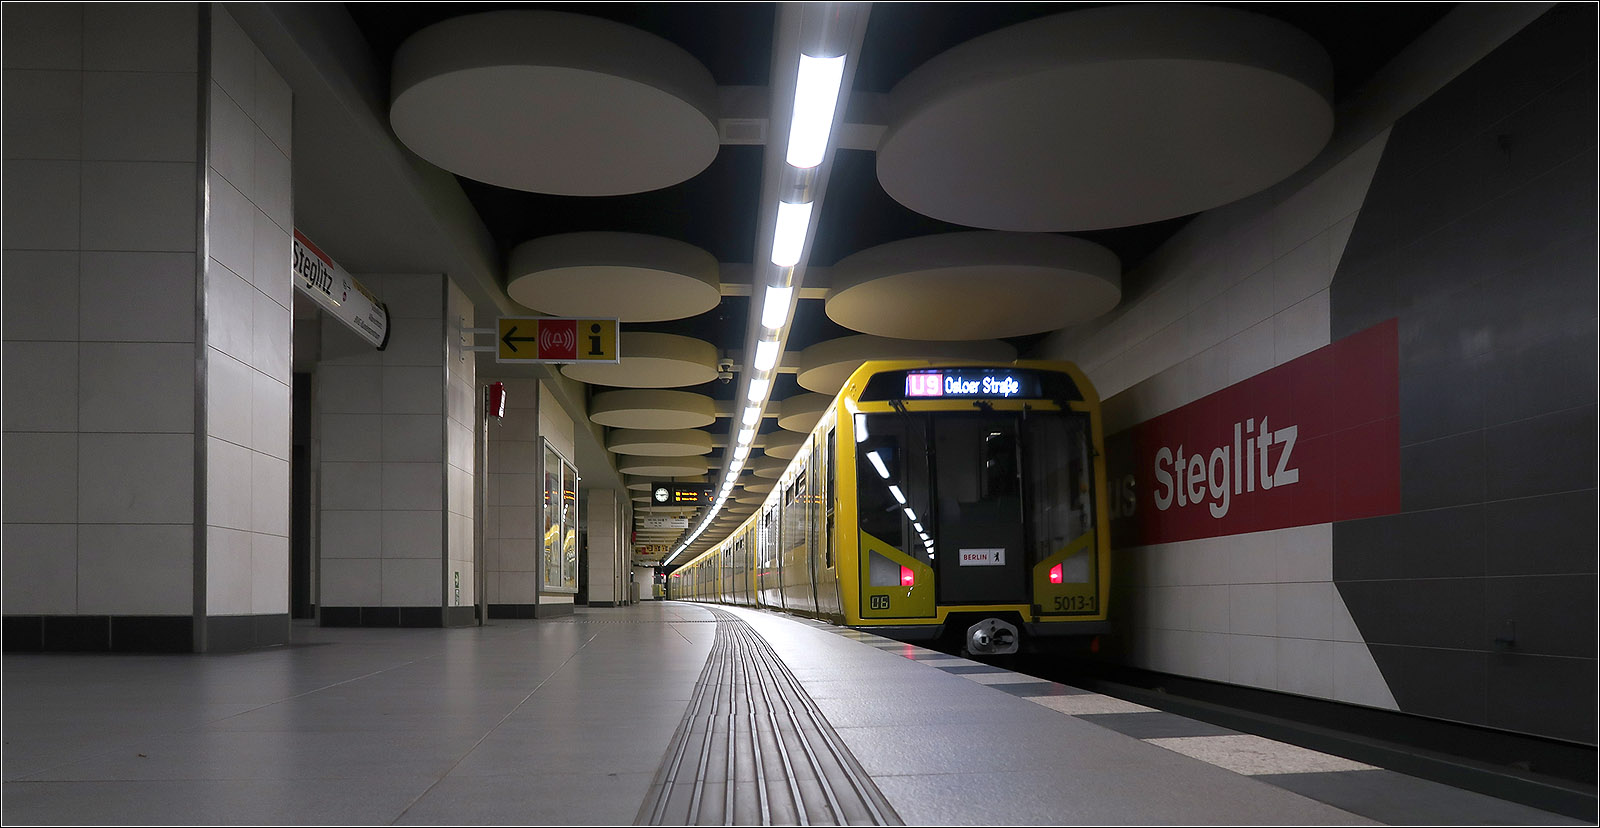 Geheimnisse der Berliner U-Bahn - 

Im Süden von Berlin endet die Linie U9 seit 1974 im eigentlich für die U10 gebauten Bahnhofsteil. Für die U9 wurde dort eigentlich in der Minus 1-Ebene eine Station gebaut, die bis an den dortigen S-Bahnhof reicht. Da im Bereich der damals von der Deutschen Reichsbahn unter dem dortigen Bahngelände nicht gebaut werden durfte, konnten keine Wende- und Aufstellgleise im Anschluss an die Station erstellt werden und so wurde für die U9 der schon für die U10 mitgebaute Bahnhof ausgebaut. 1988 wurde sogar an der U9-Station noch ein unter dem S-Bahntunnel weiterführende Tunnelabschnitt vorab erstellt, da die Betriebsführung der S-Bahn inzwischen auf die BVG übergegangen war.

Die Realisierung einer Linie U10 schien in den 1970iger Jahren noch recht zeitnah möglich zu sein. So wurde auch am Kleistpark, wo die U10 die U7 hätte kreuzen sollen, unter der U7 ein 40 Meter langes Tunnelstück mitgebaut. Ebenfalls wurde am Innsbrucker Platz (Endpunkt der Linie U4) im Zusammenhang mit dem Autobahn eine komplette Station im Rohbau erstellt. Die U10 hätte ab Rathaus Steglitz weiter in Richtung Lichterfelde, während die U9 in Richtung Lankwitz
fahren sollen. Die Weiterführung bis Lankwitz-Kirche war in nicht so lange Vergangenheit noch als vordringlich eingestuft.

14.07.2023 (M)